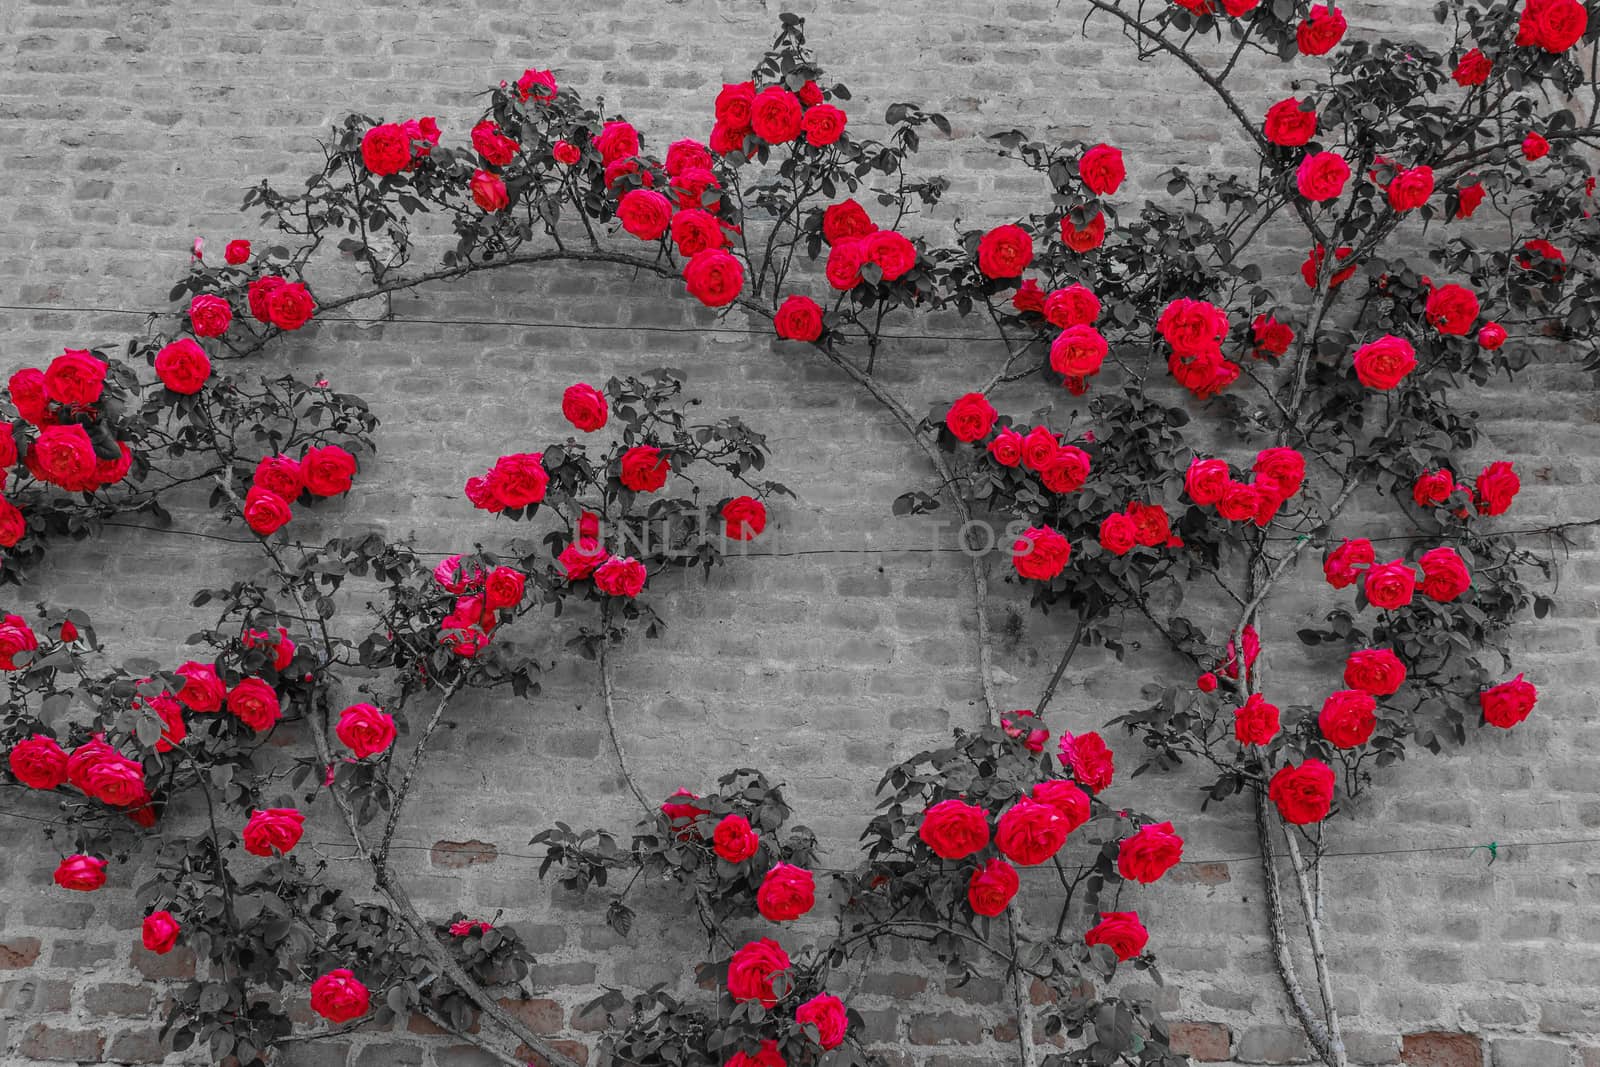 a roses climb on a brick wall by moorea